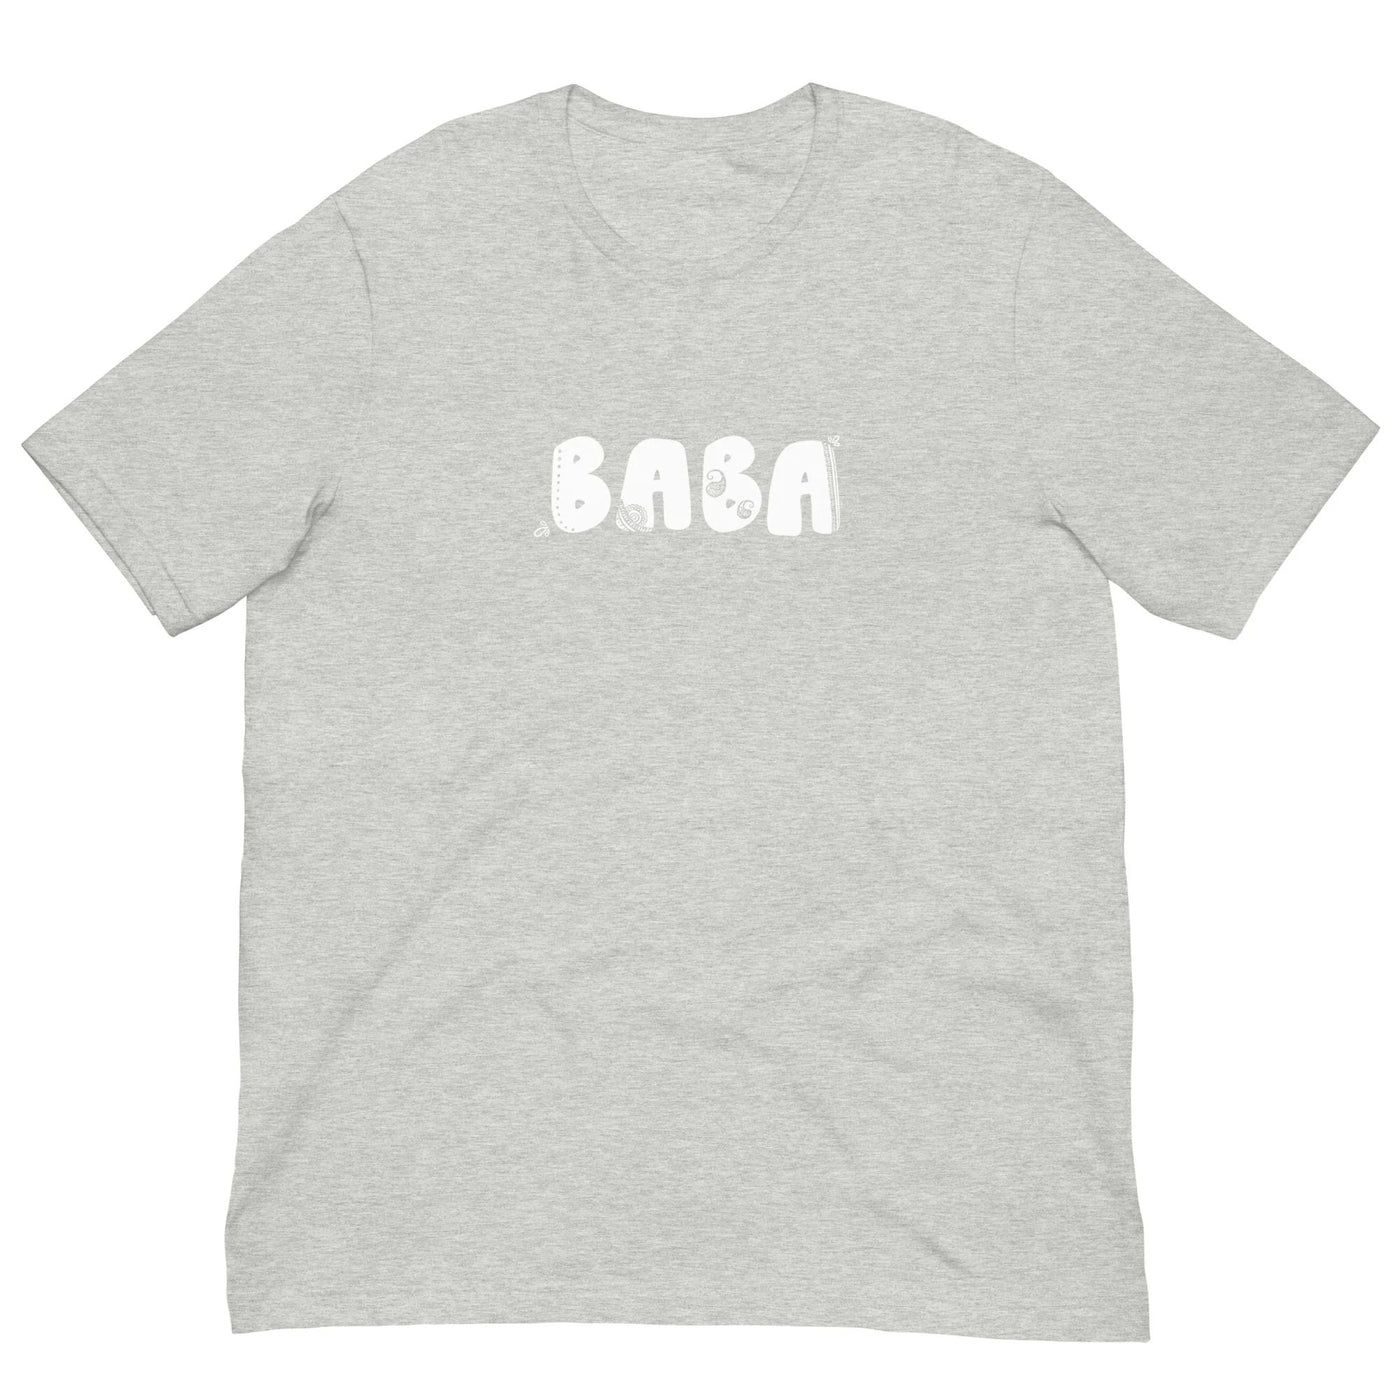 Baba T-shirt